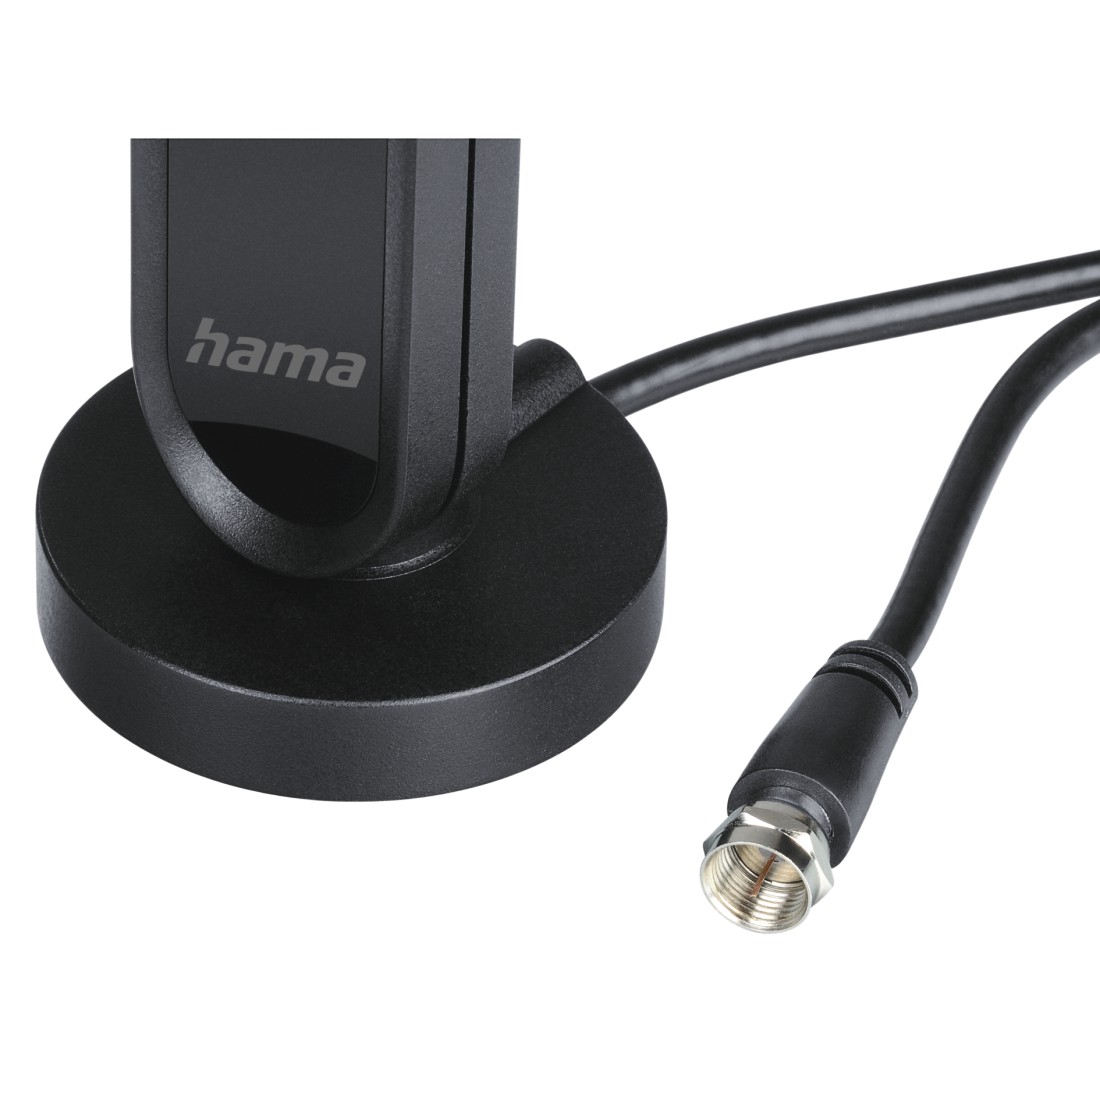 Hama DAB-Zimmerantenne für Radio (DAB, DAB+, UKW, digitale